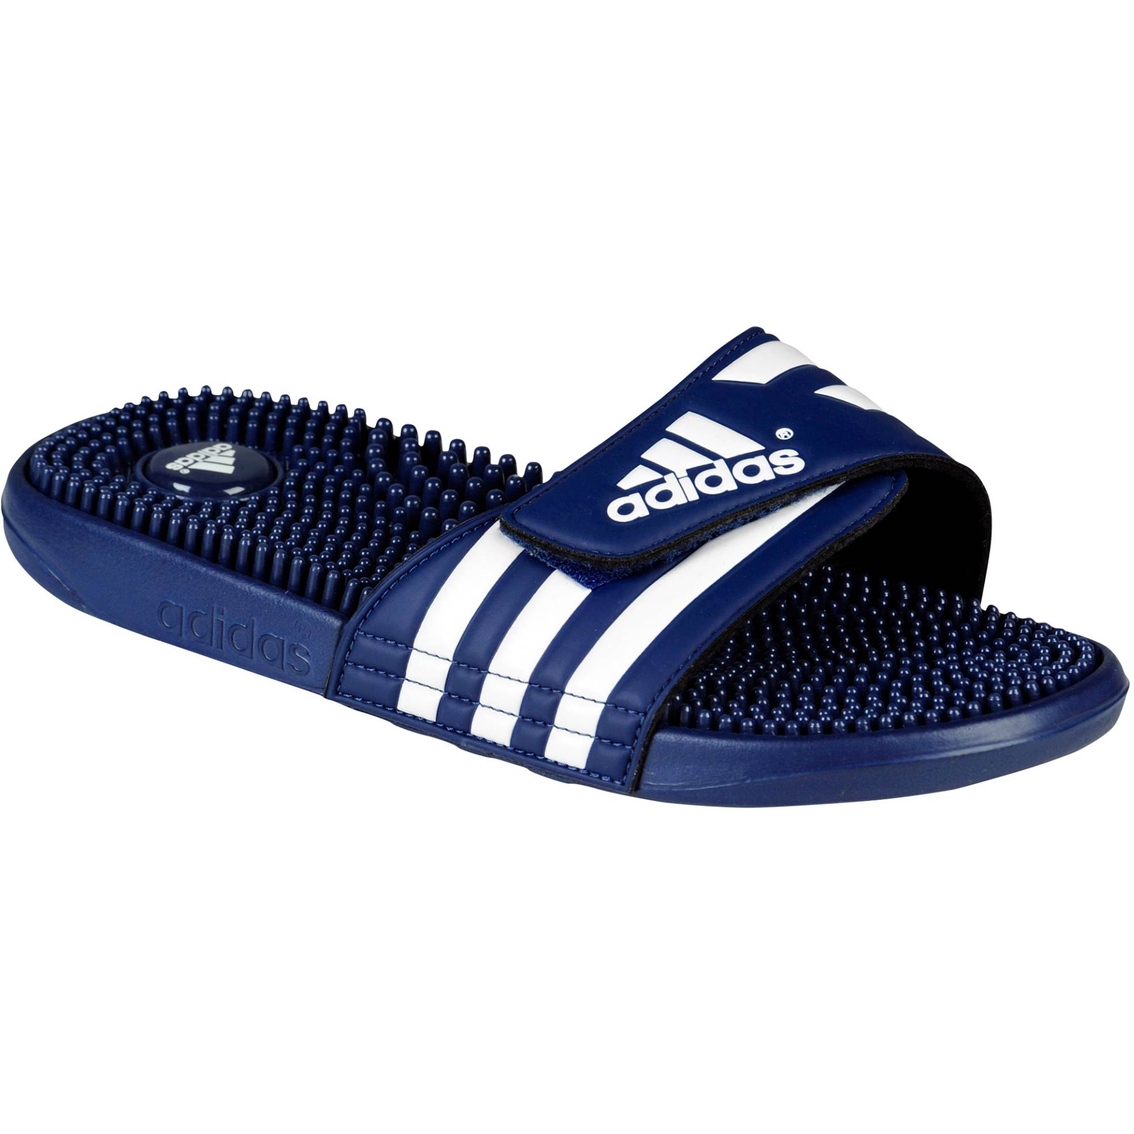 Adidas Men's Adissage Massage Sandals | Sandals & Flip Flops | Shoes ...